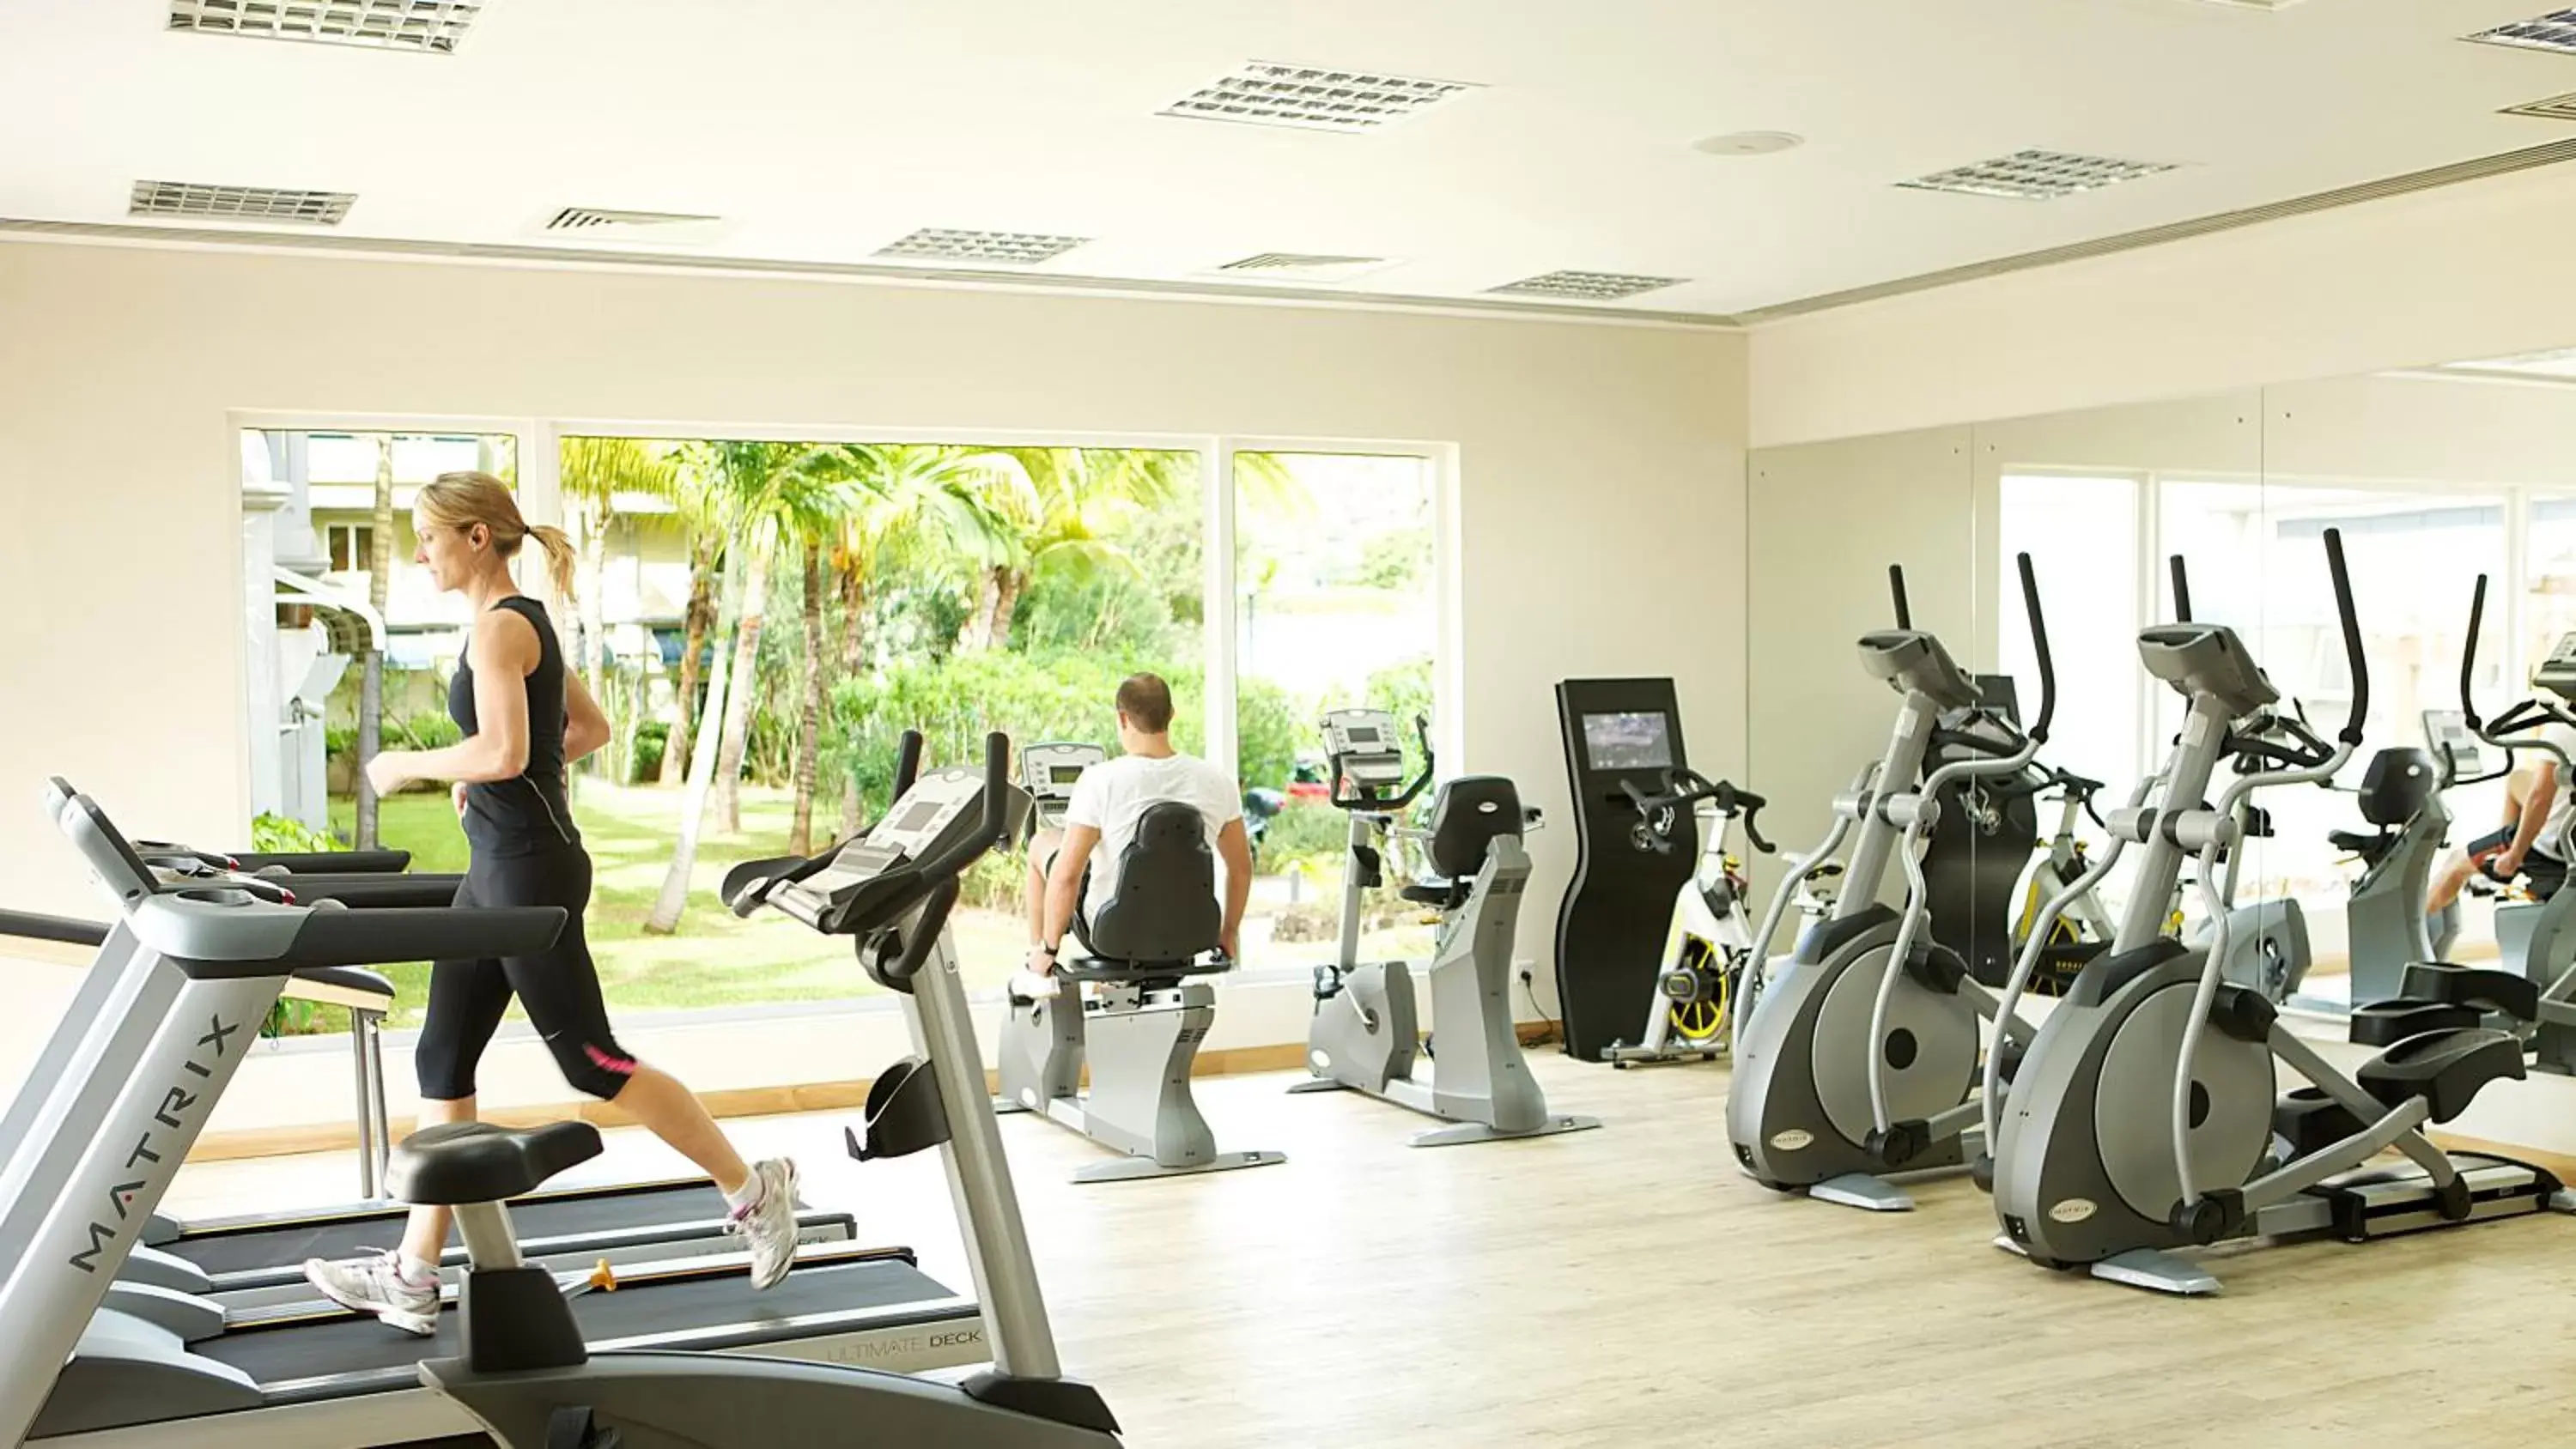 Fitness centre/facilities, Fitness Center/Facilities in Le Suffren Hotel & Marina